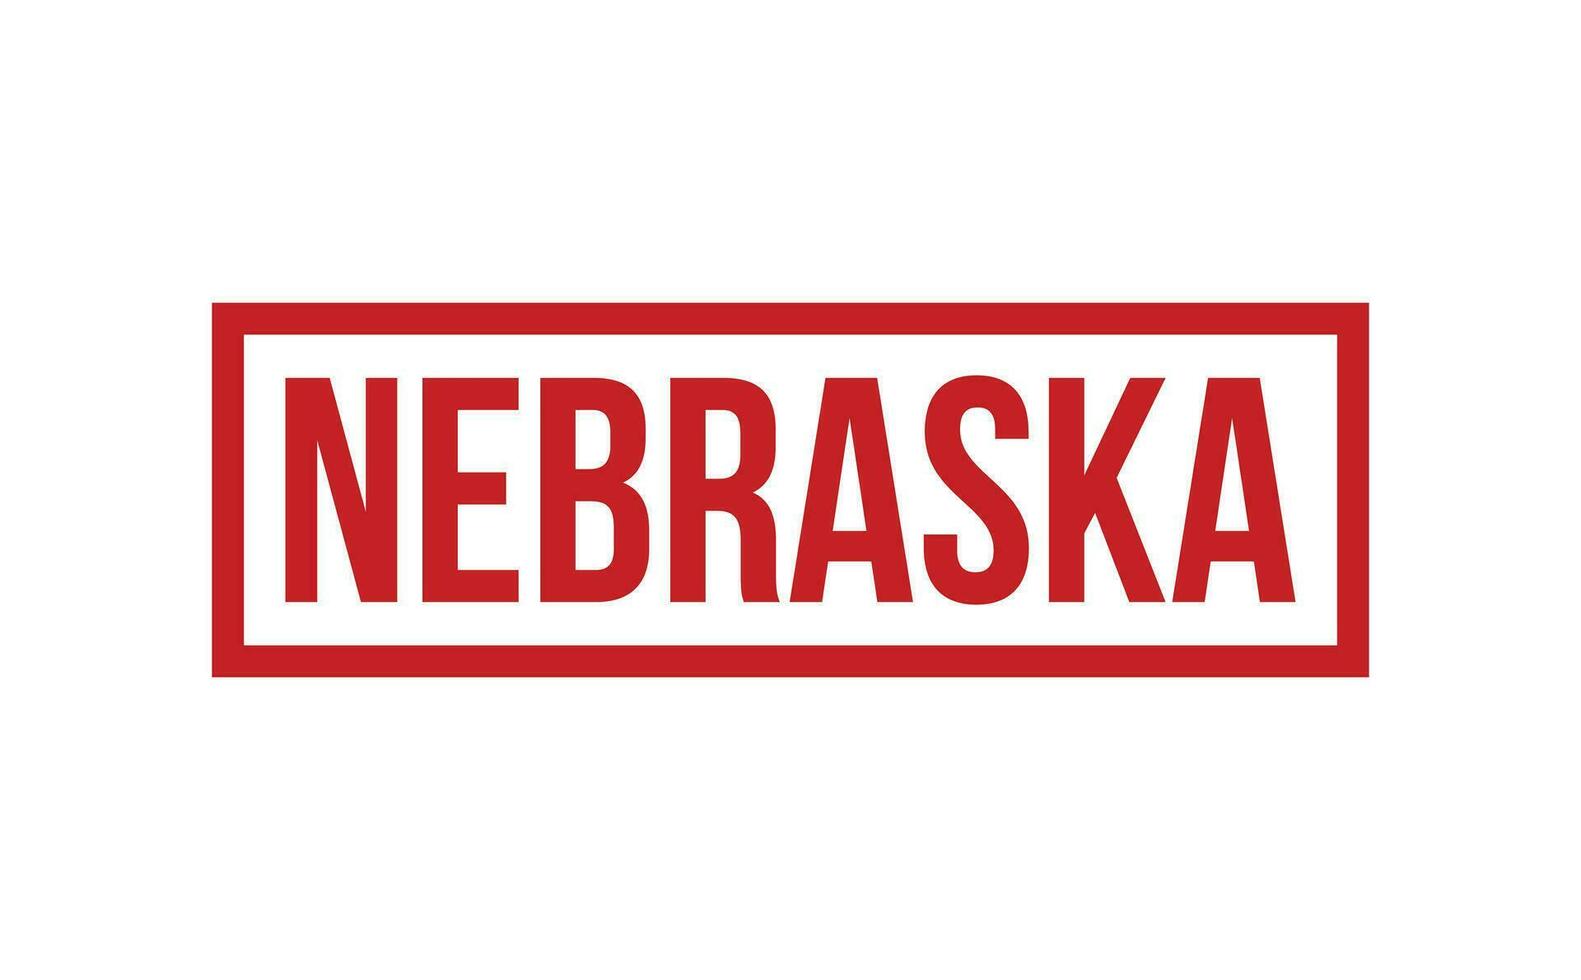 Nebraska caucho sello sello vector